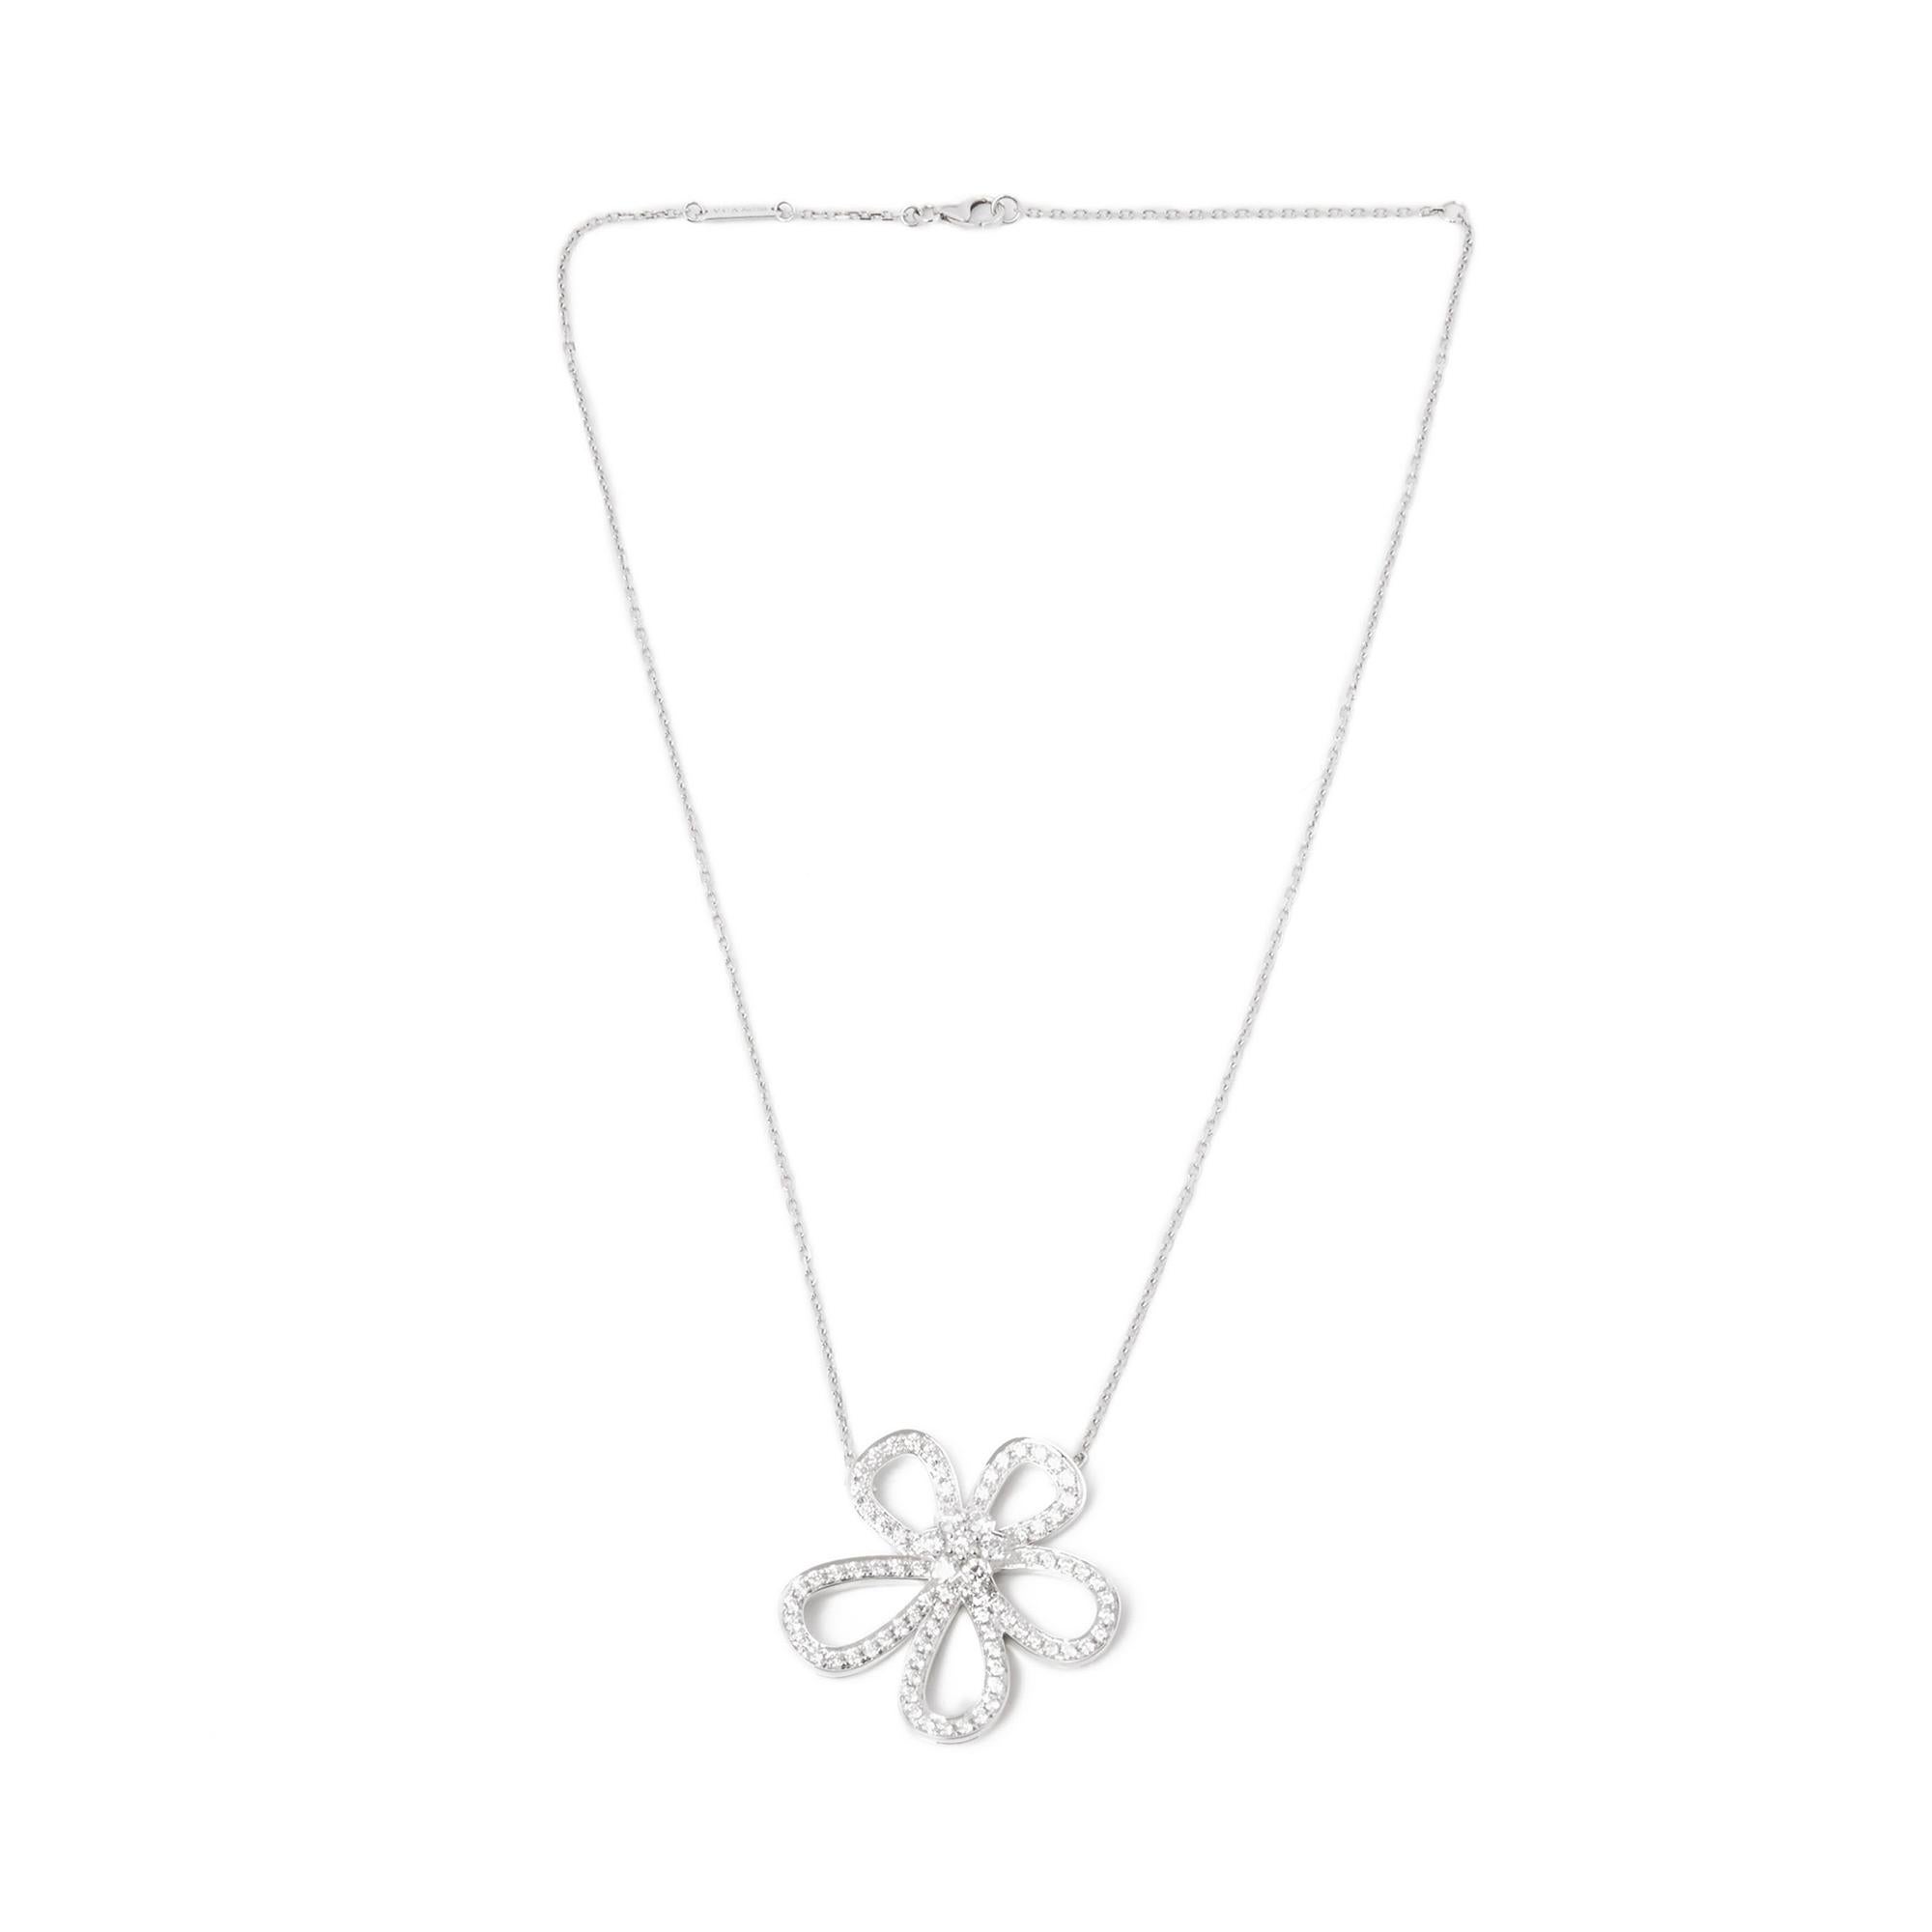 Modern Van Cleef & Arpels 18 Karat White Gold Round Cut Diamond Flowerlace Necklace